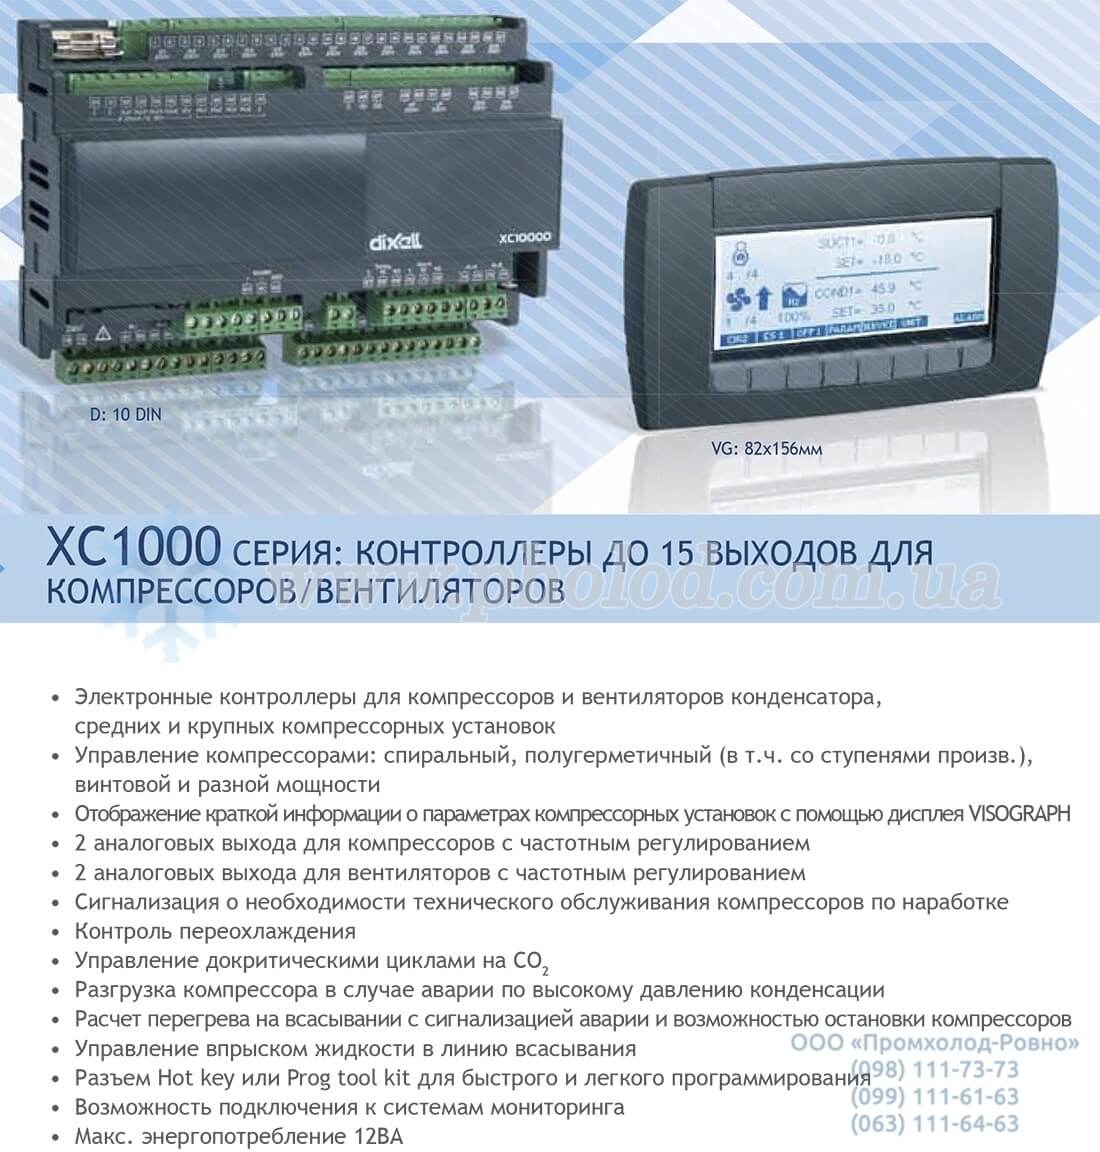 Dixell XC1000 - 1